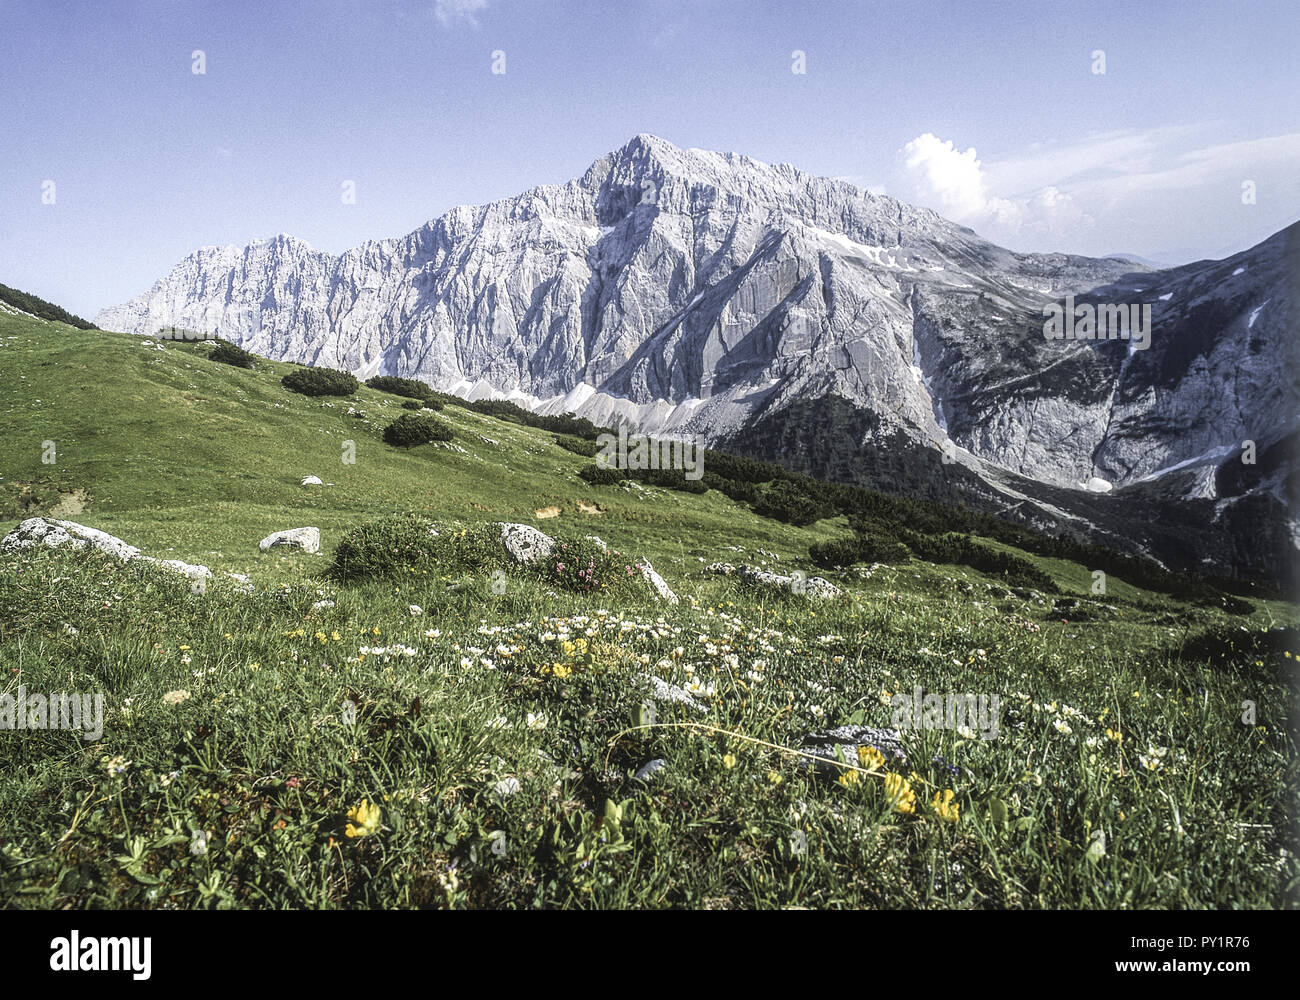 Bergwiese vor Karwendelgebirge, Speckkarspitze, Tirol, Oesterreich Stock Photo